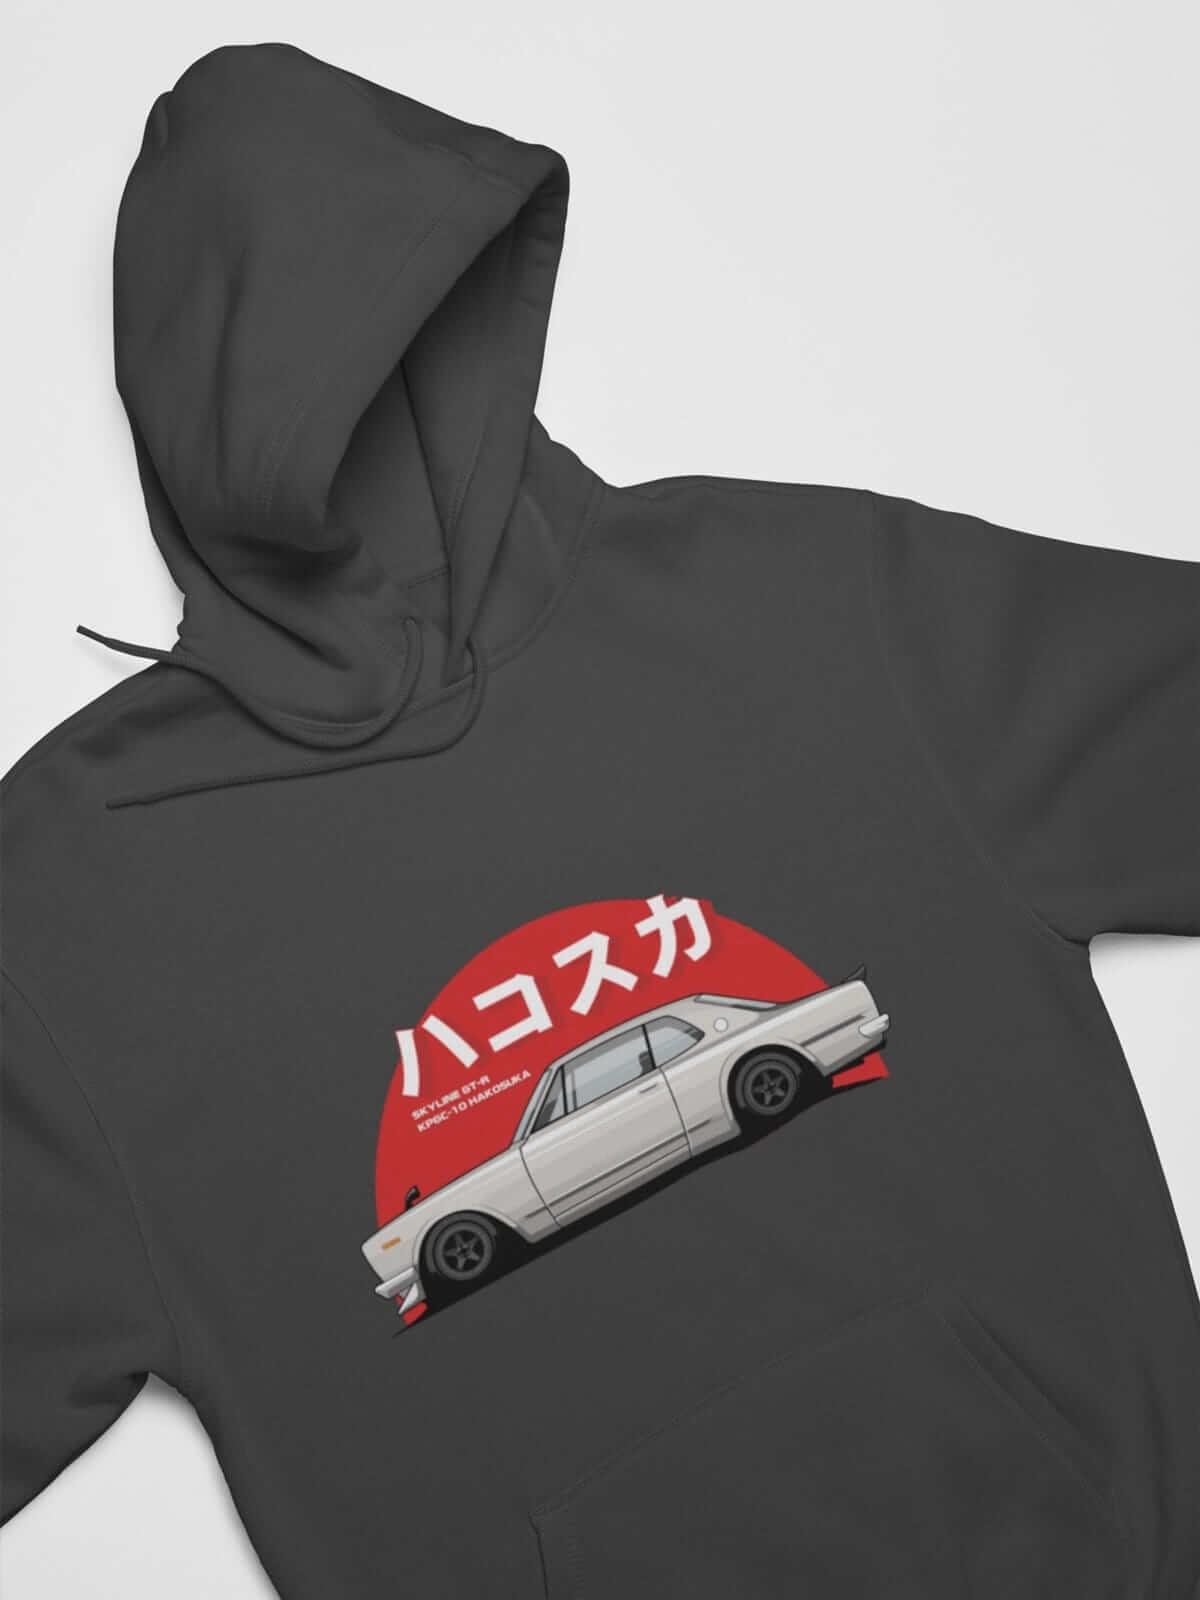 Japanese car printed on dark grey car hoodie, JDM sweatshirt, car guy gift, car lover, car fan, car enthusiast, petrolhead, JDM lover, boyfriend gift idea